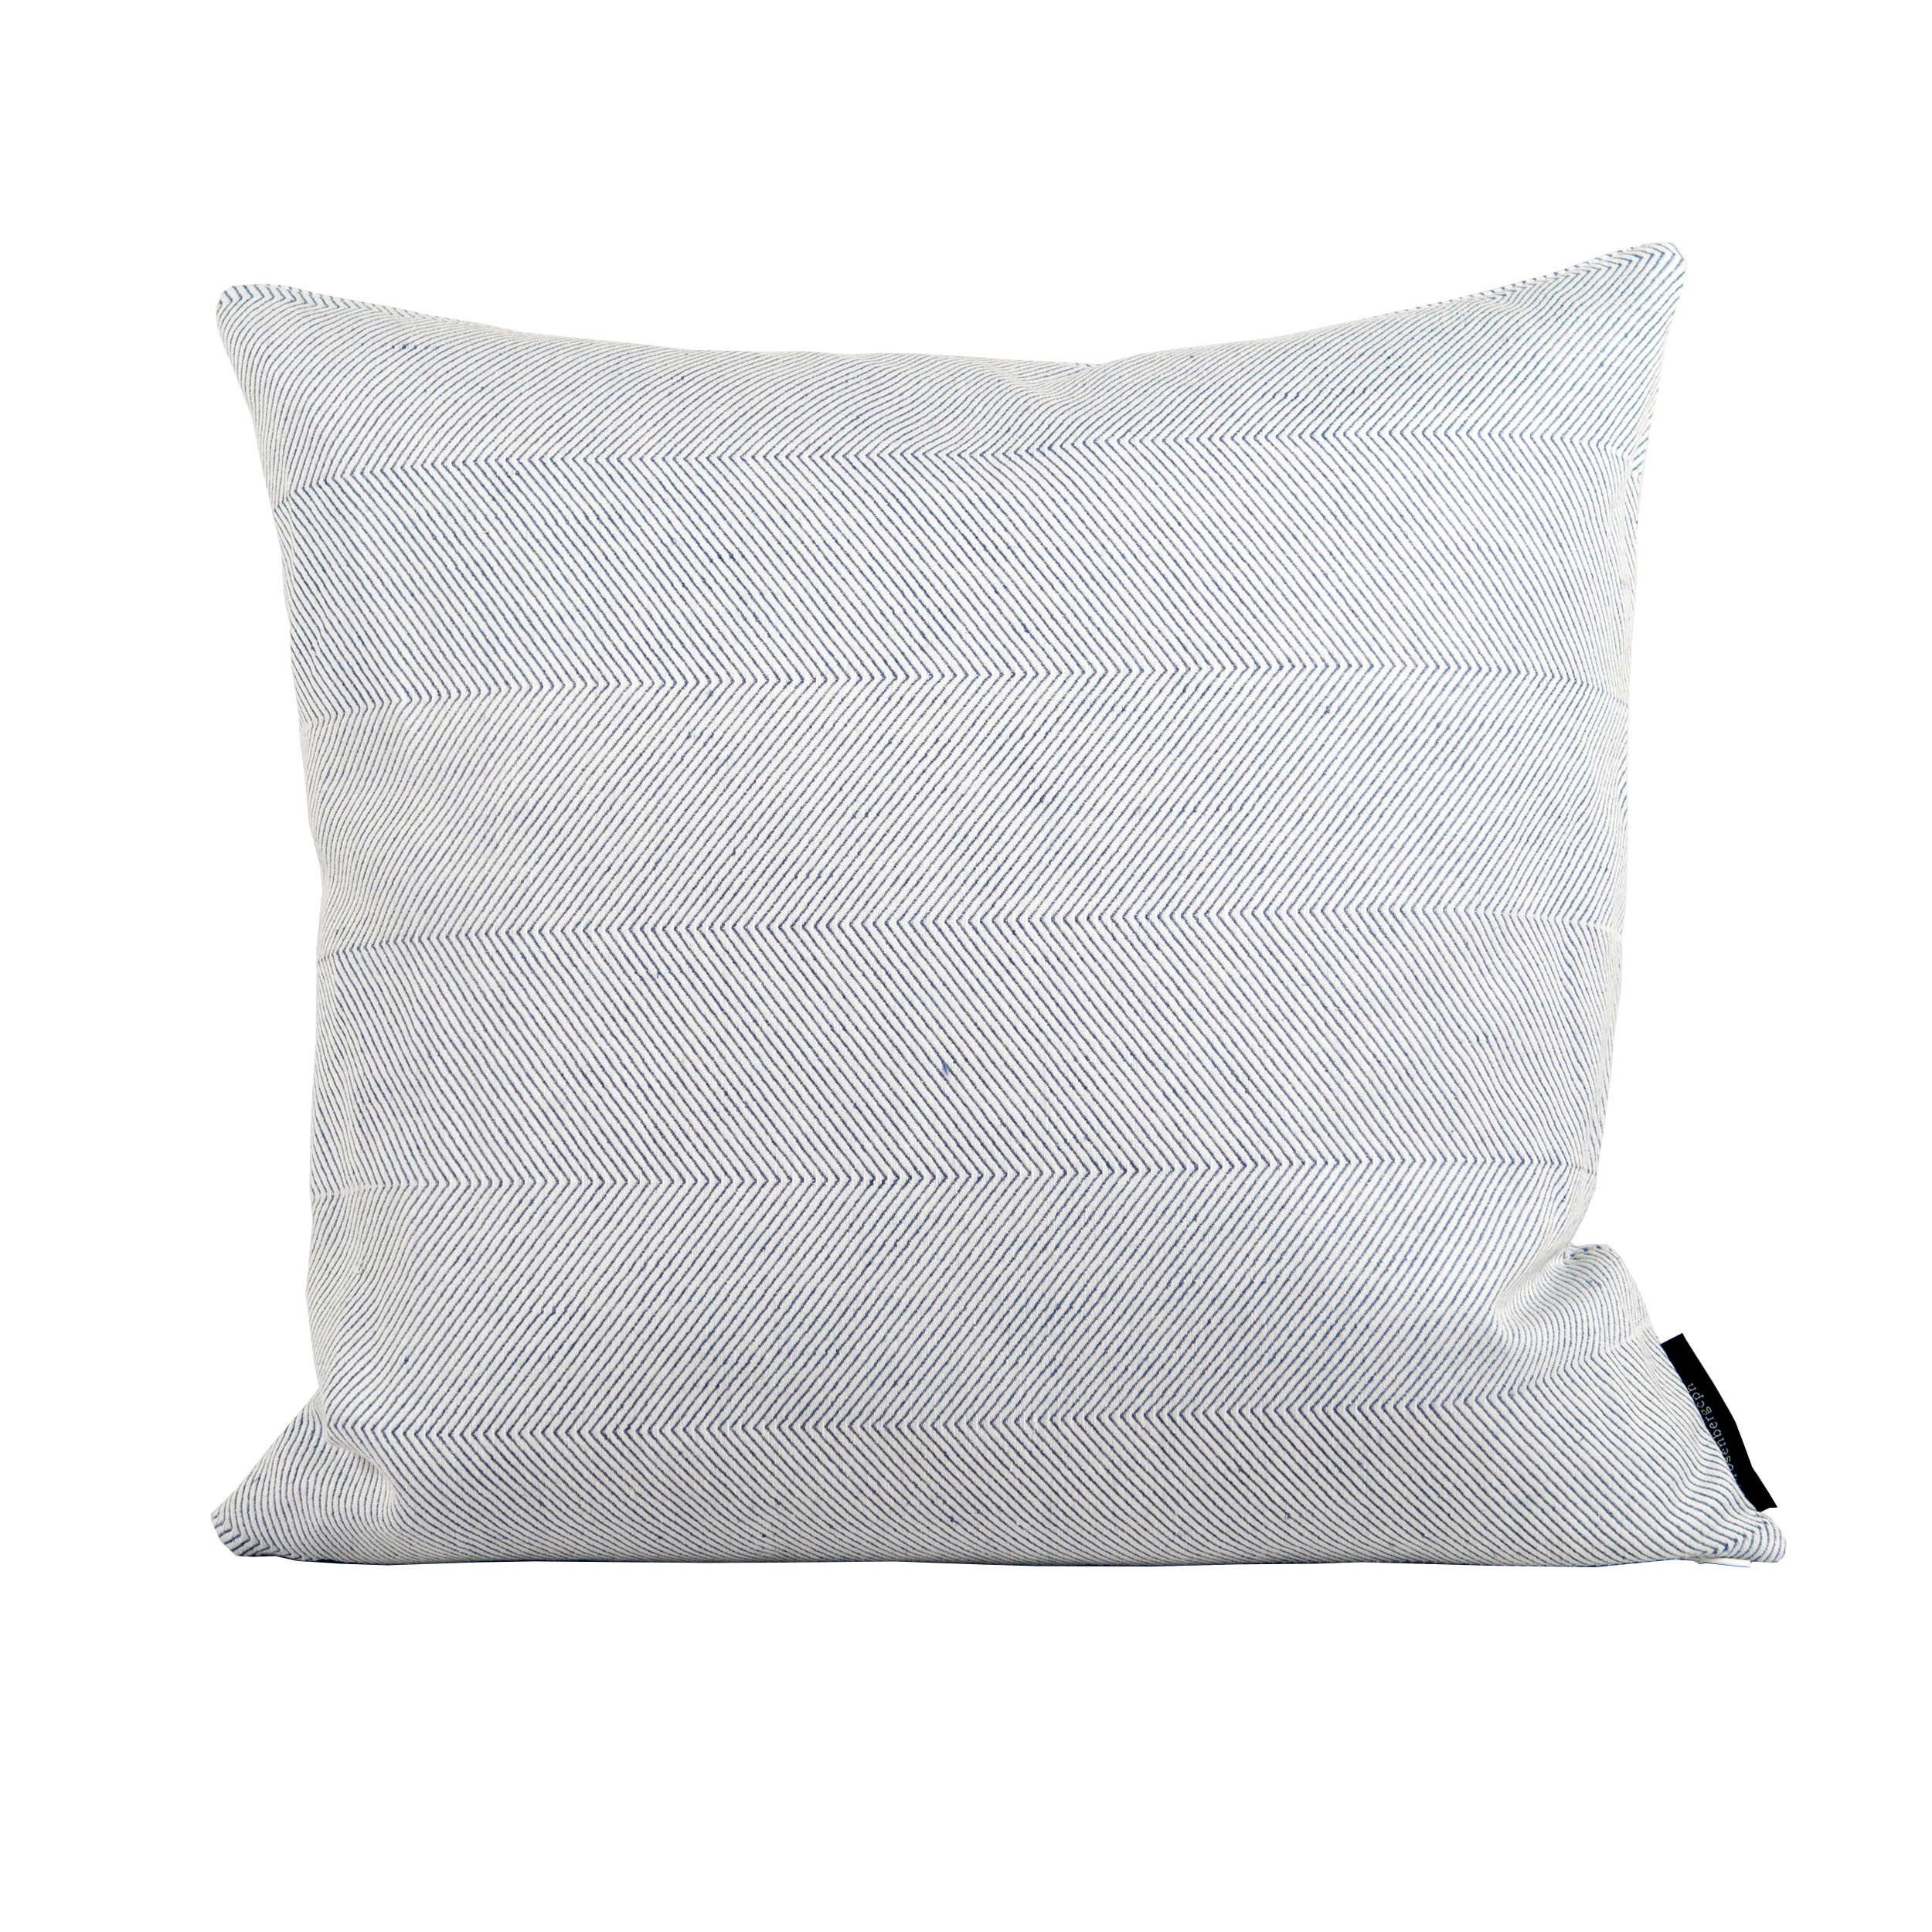 Square cushion linen/cotton light blue design by Anne Rosenberg, RosenbergCph